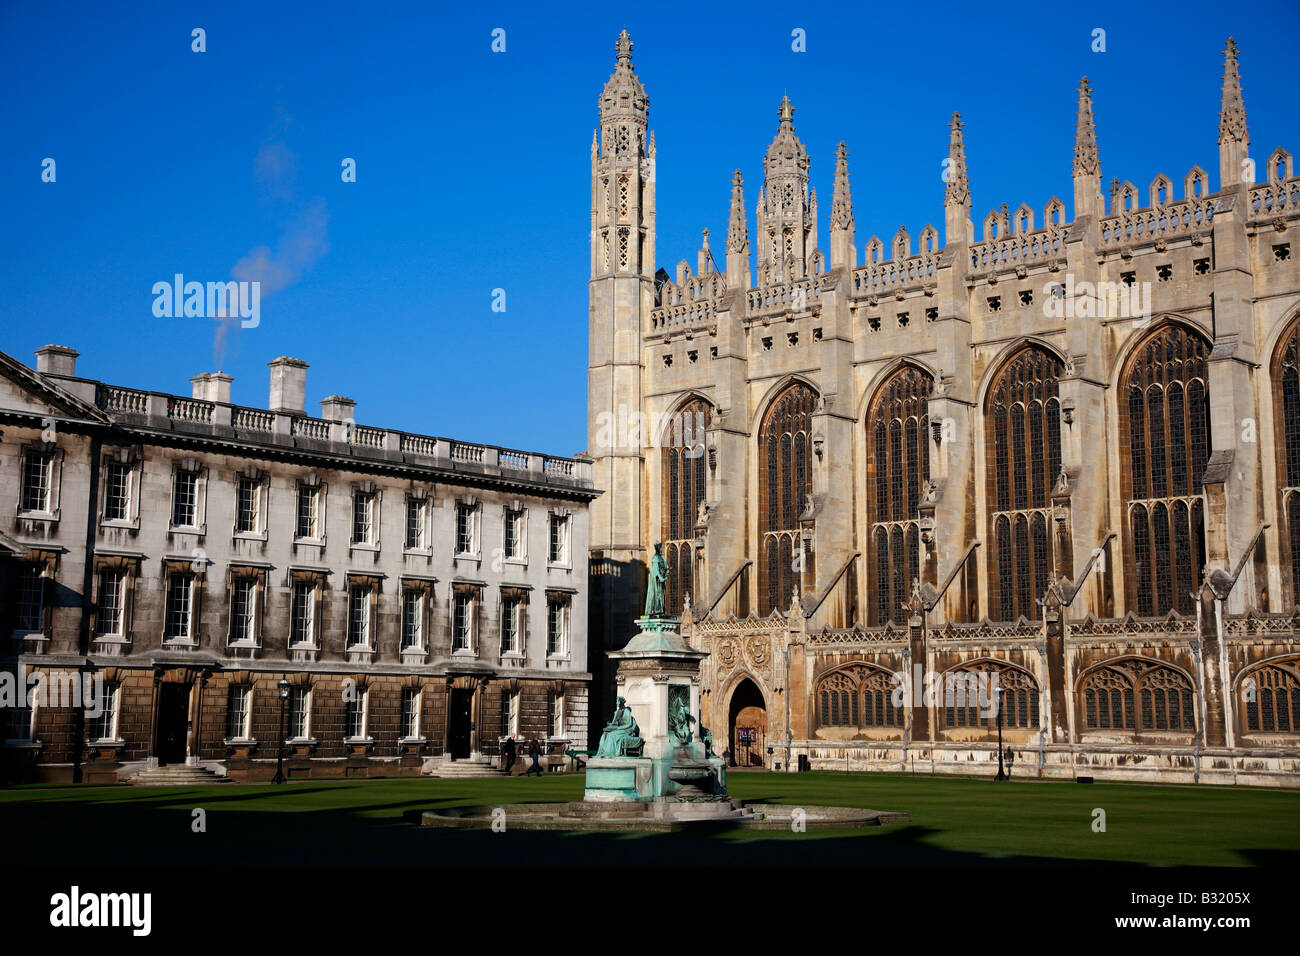 Statue du Roi Henry VI en face de Kings College Chapel de l'Université Cambridge Cambridgeshire Angleterre Royaume-uni Grande-bretagne Ville Banque D'Images